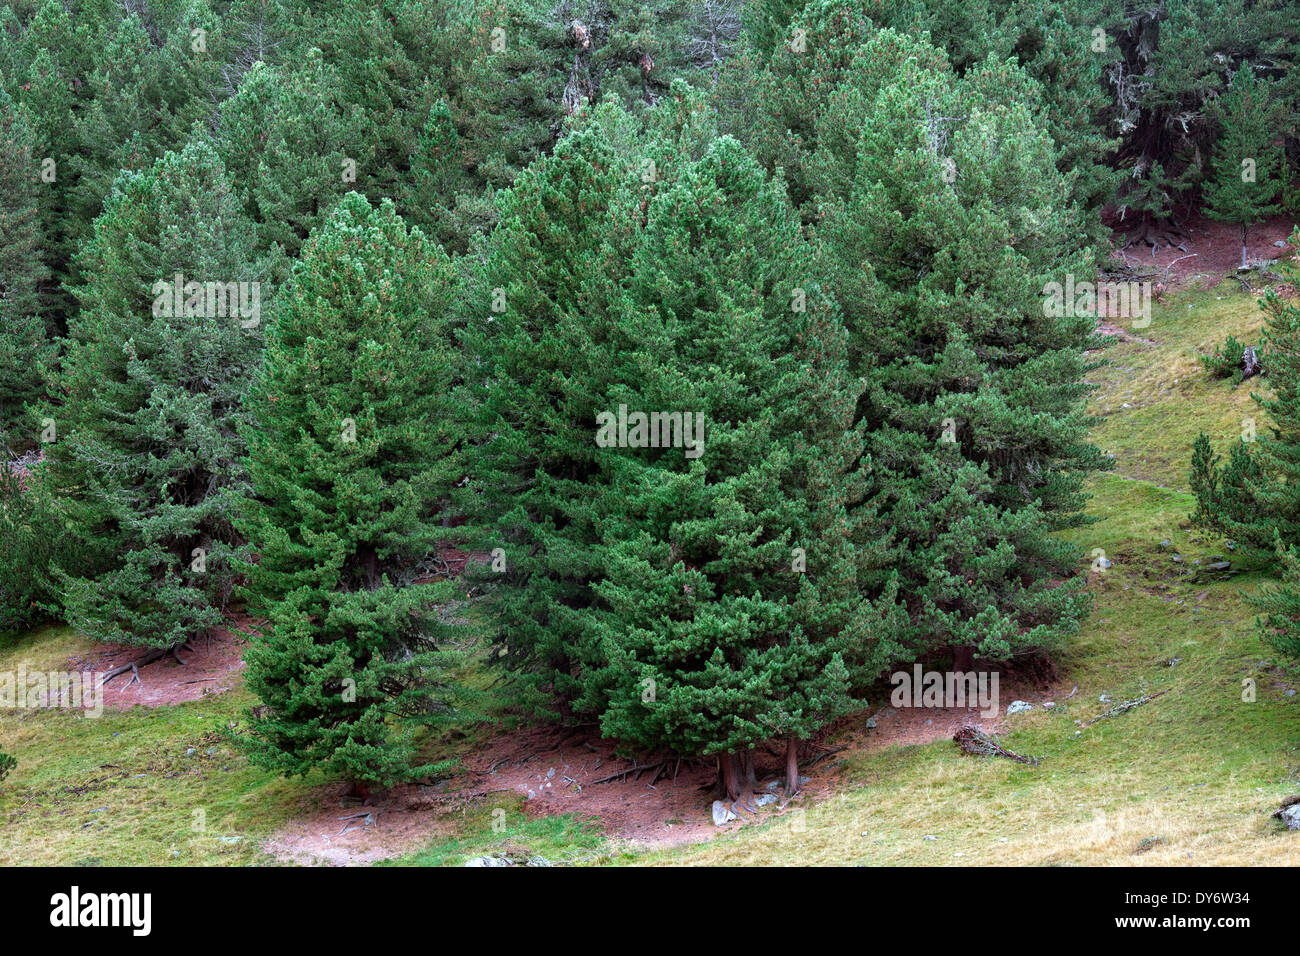 Pins / Suisse / en pin suisse Arolla pin (Pinus cembra) poussant sur des pentes de montagne dans les Alpes Suisses, Suisse Banque D'Images